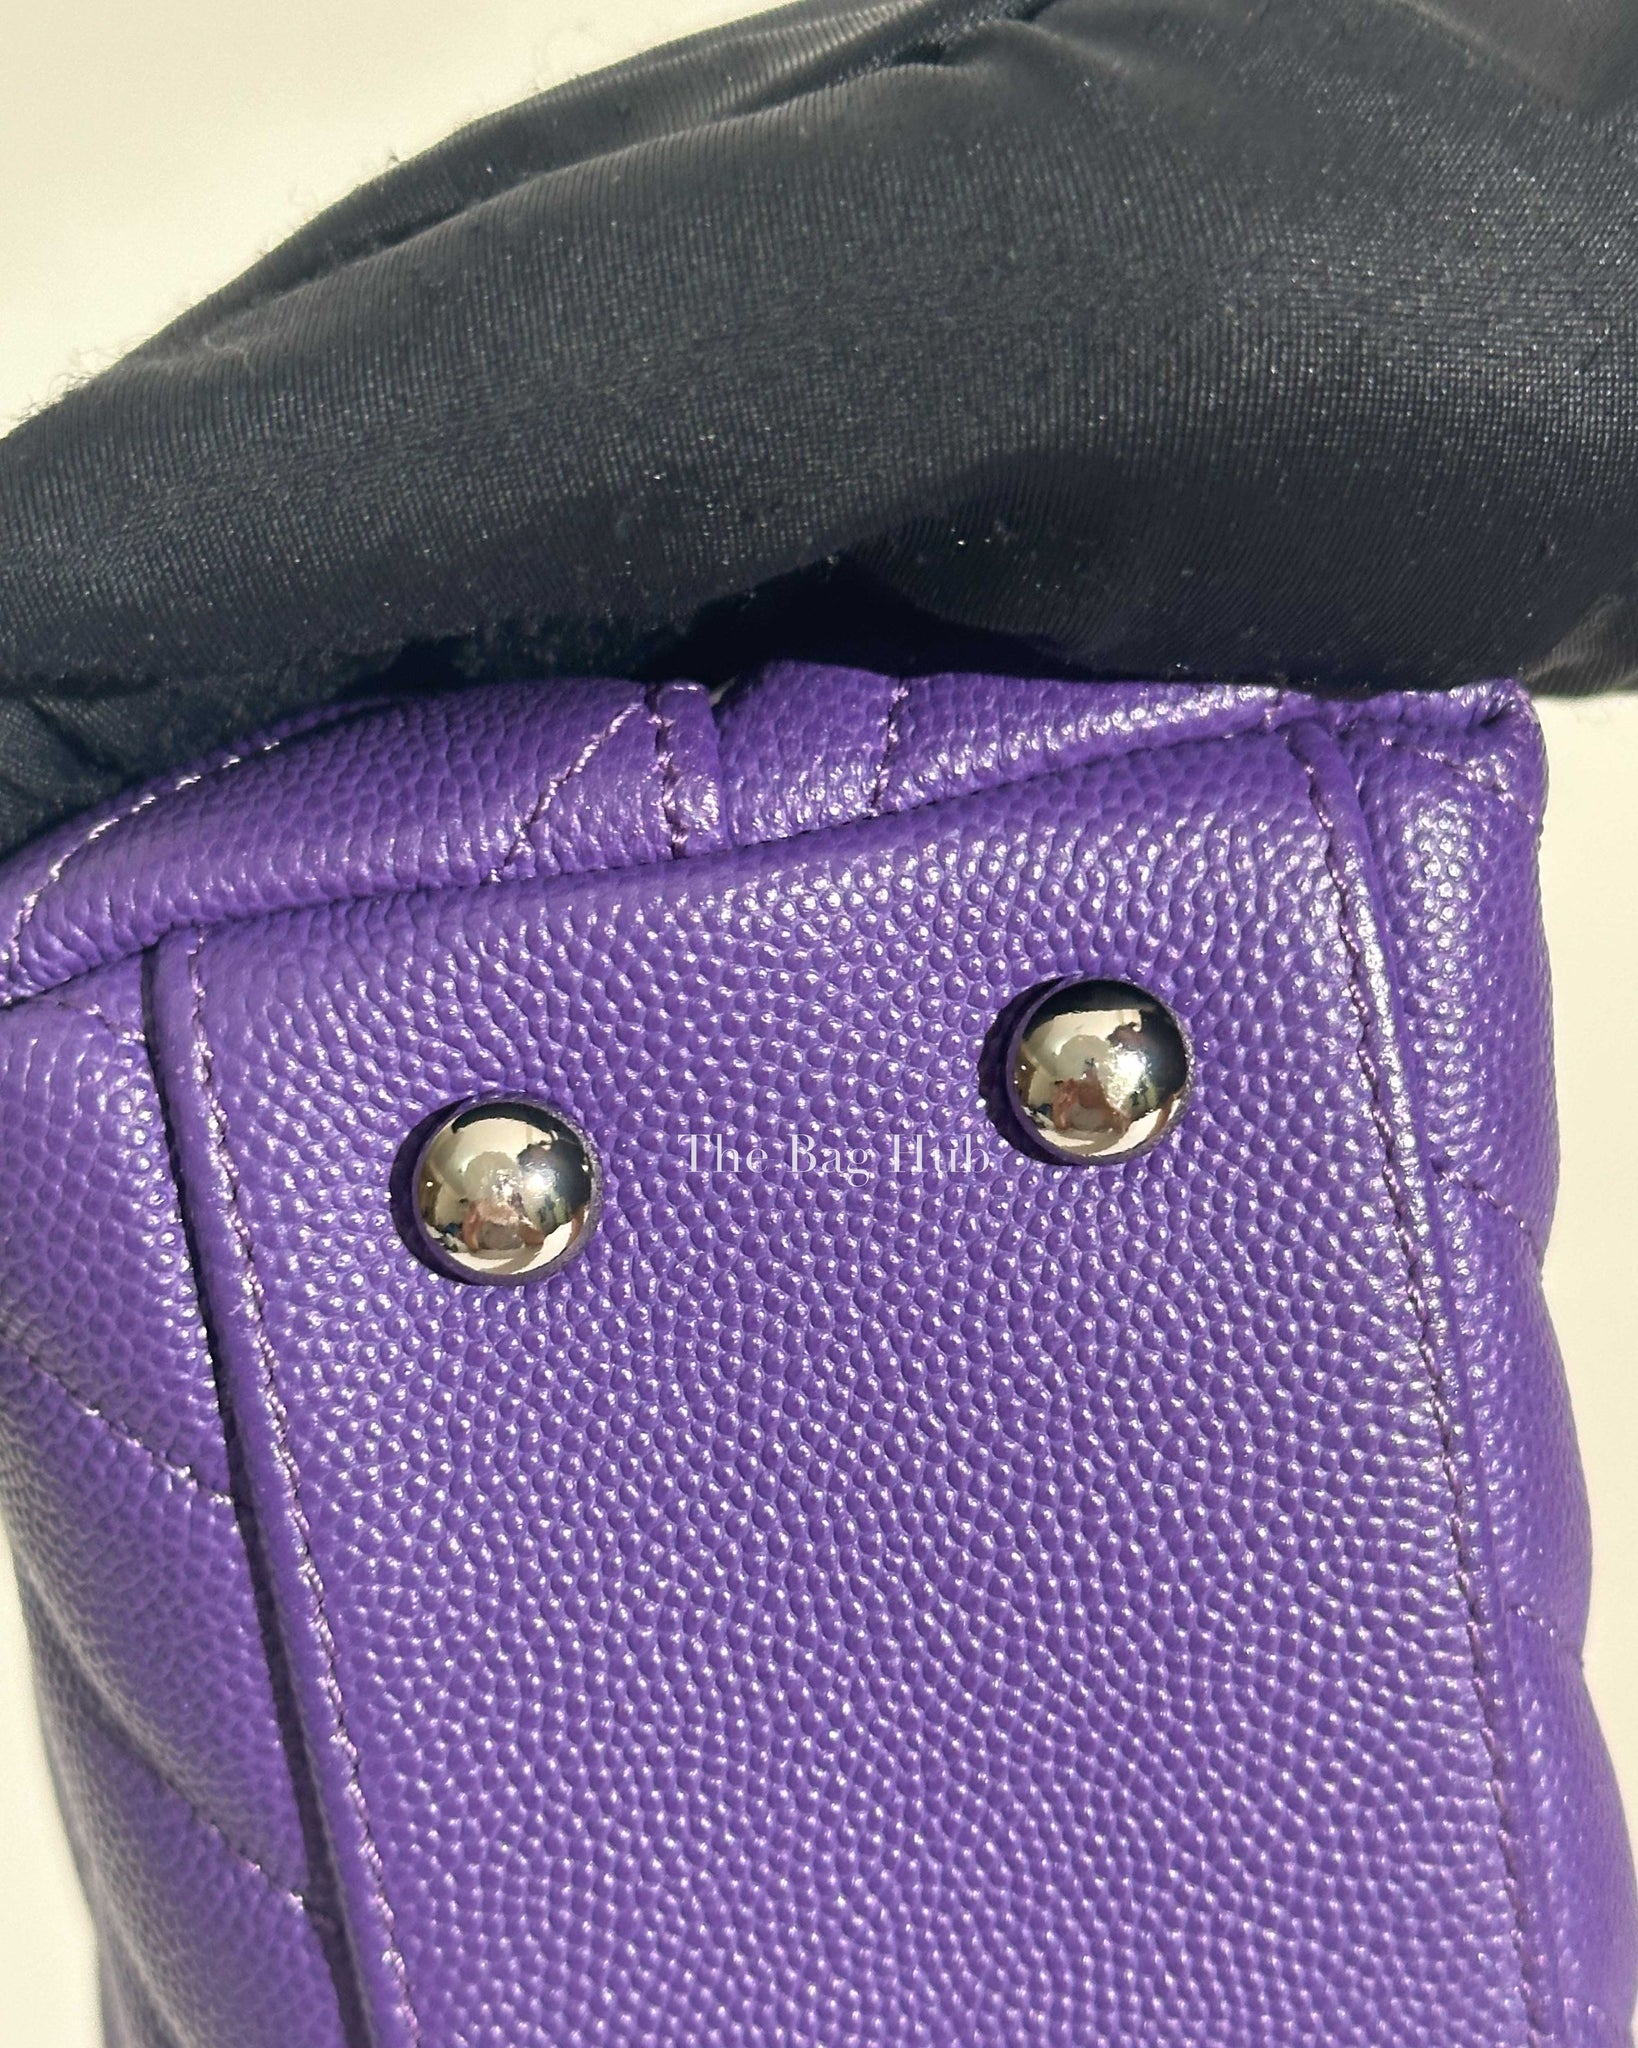 Chanel Purple Caviar Mini Coco Handle Bag SHW